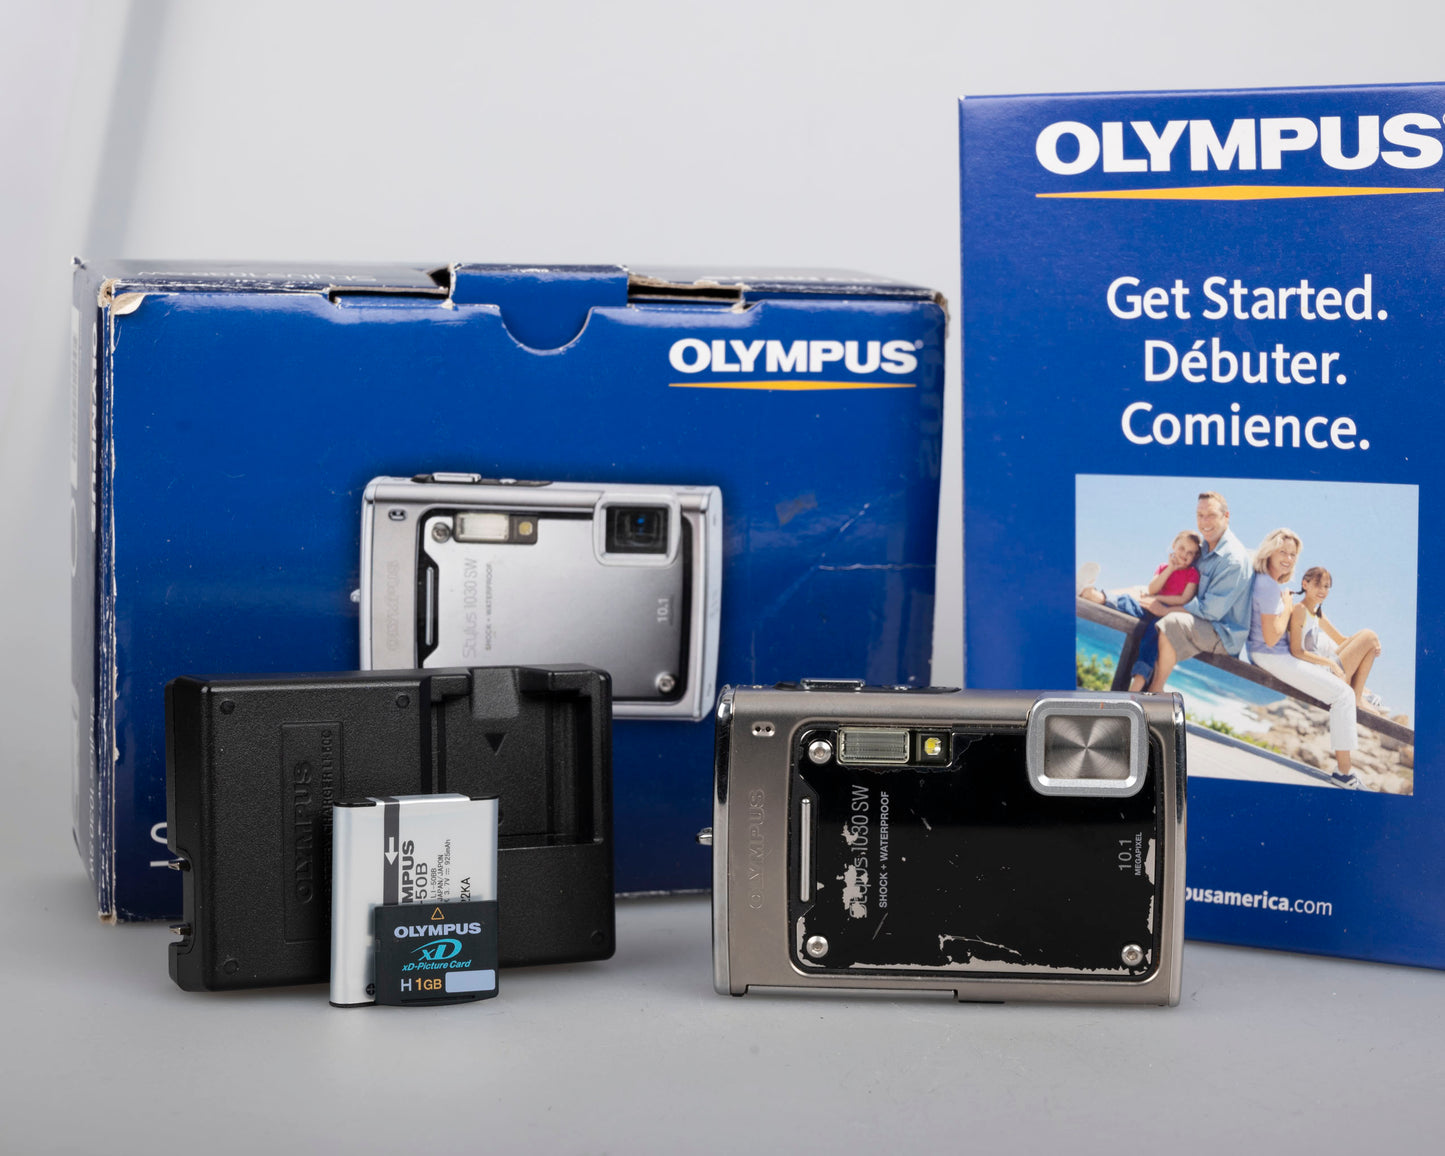 Appareil photo numérique robuste avec capteur CCD Olympus Stylus 1030 SW 10MP avec chargeur + batterie + carte XD 1 Go + boîte d'origine + manuels